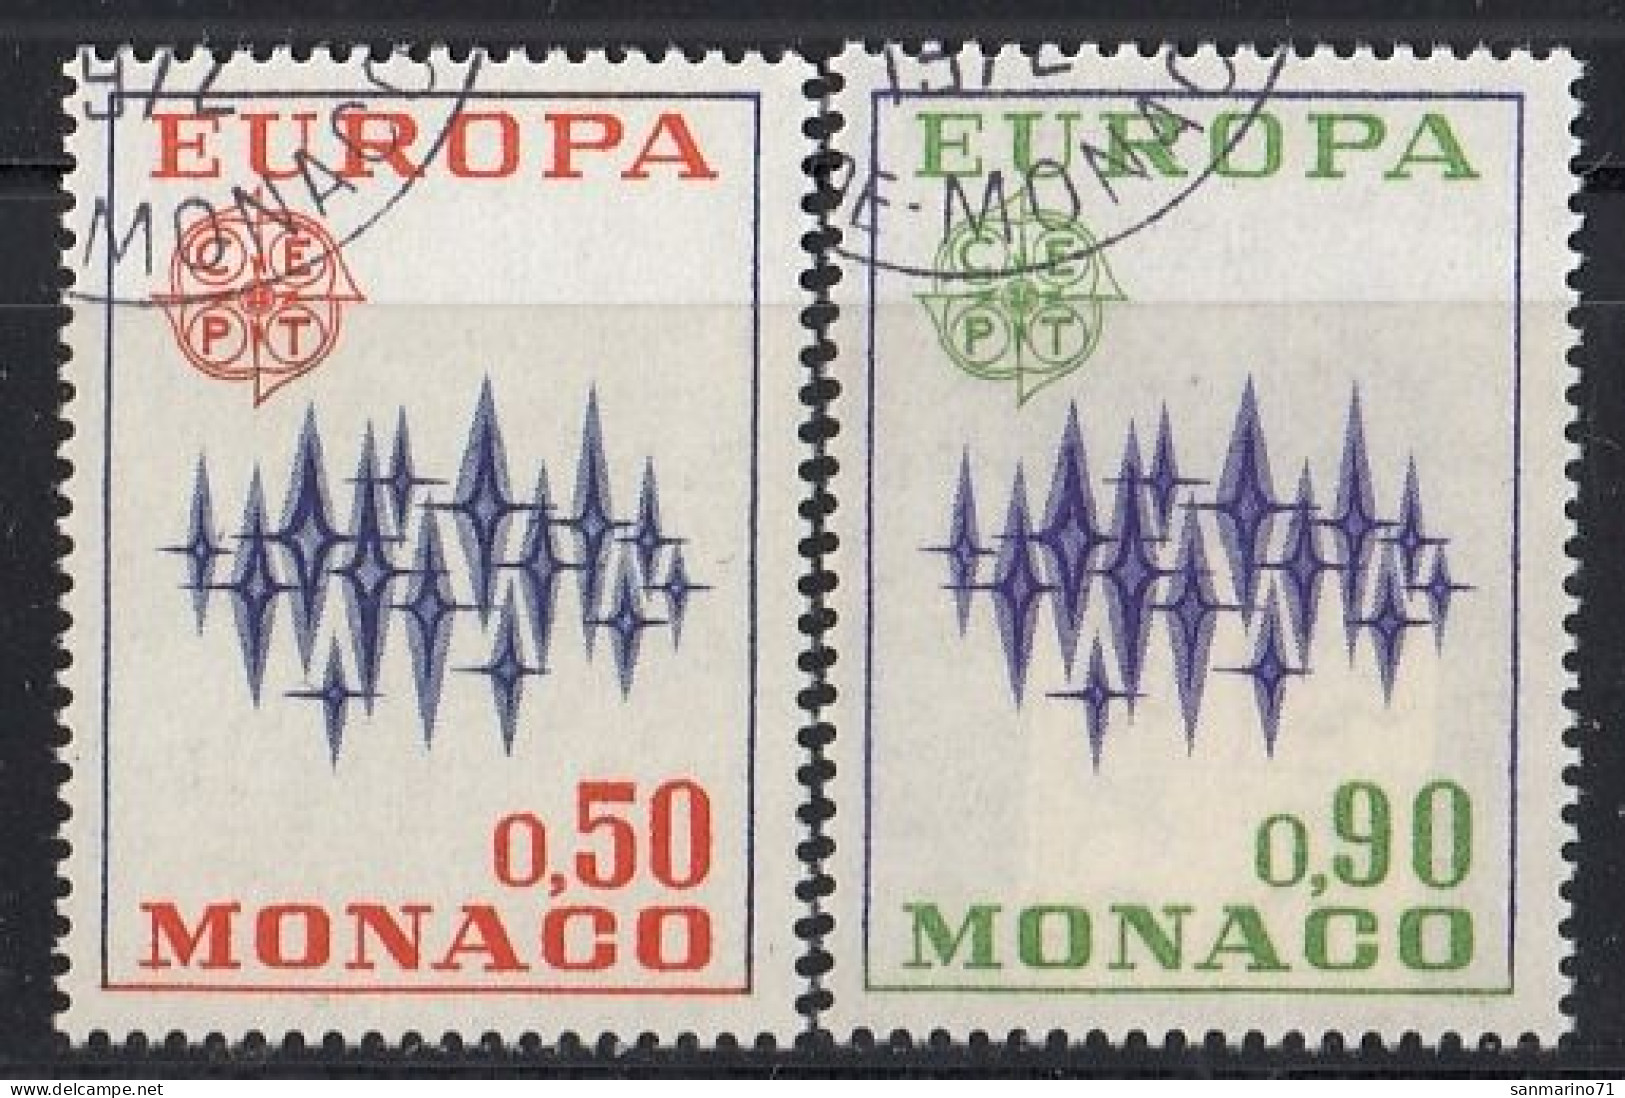 MONACO 1038-1039,used - 1972